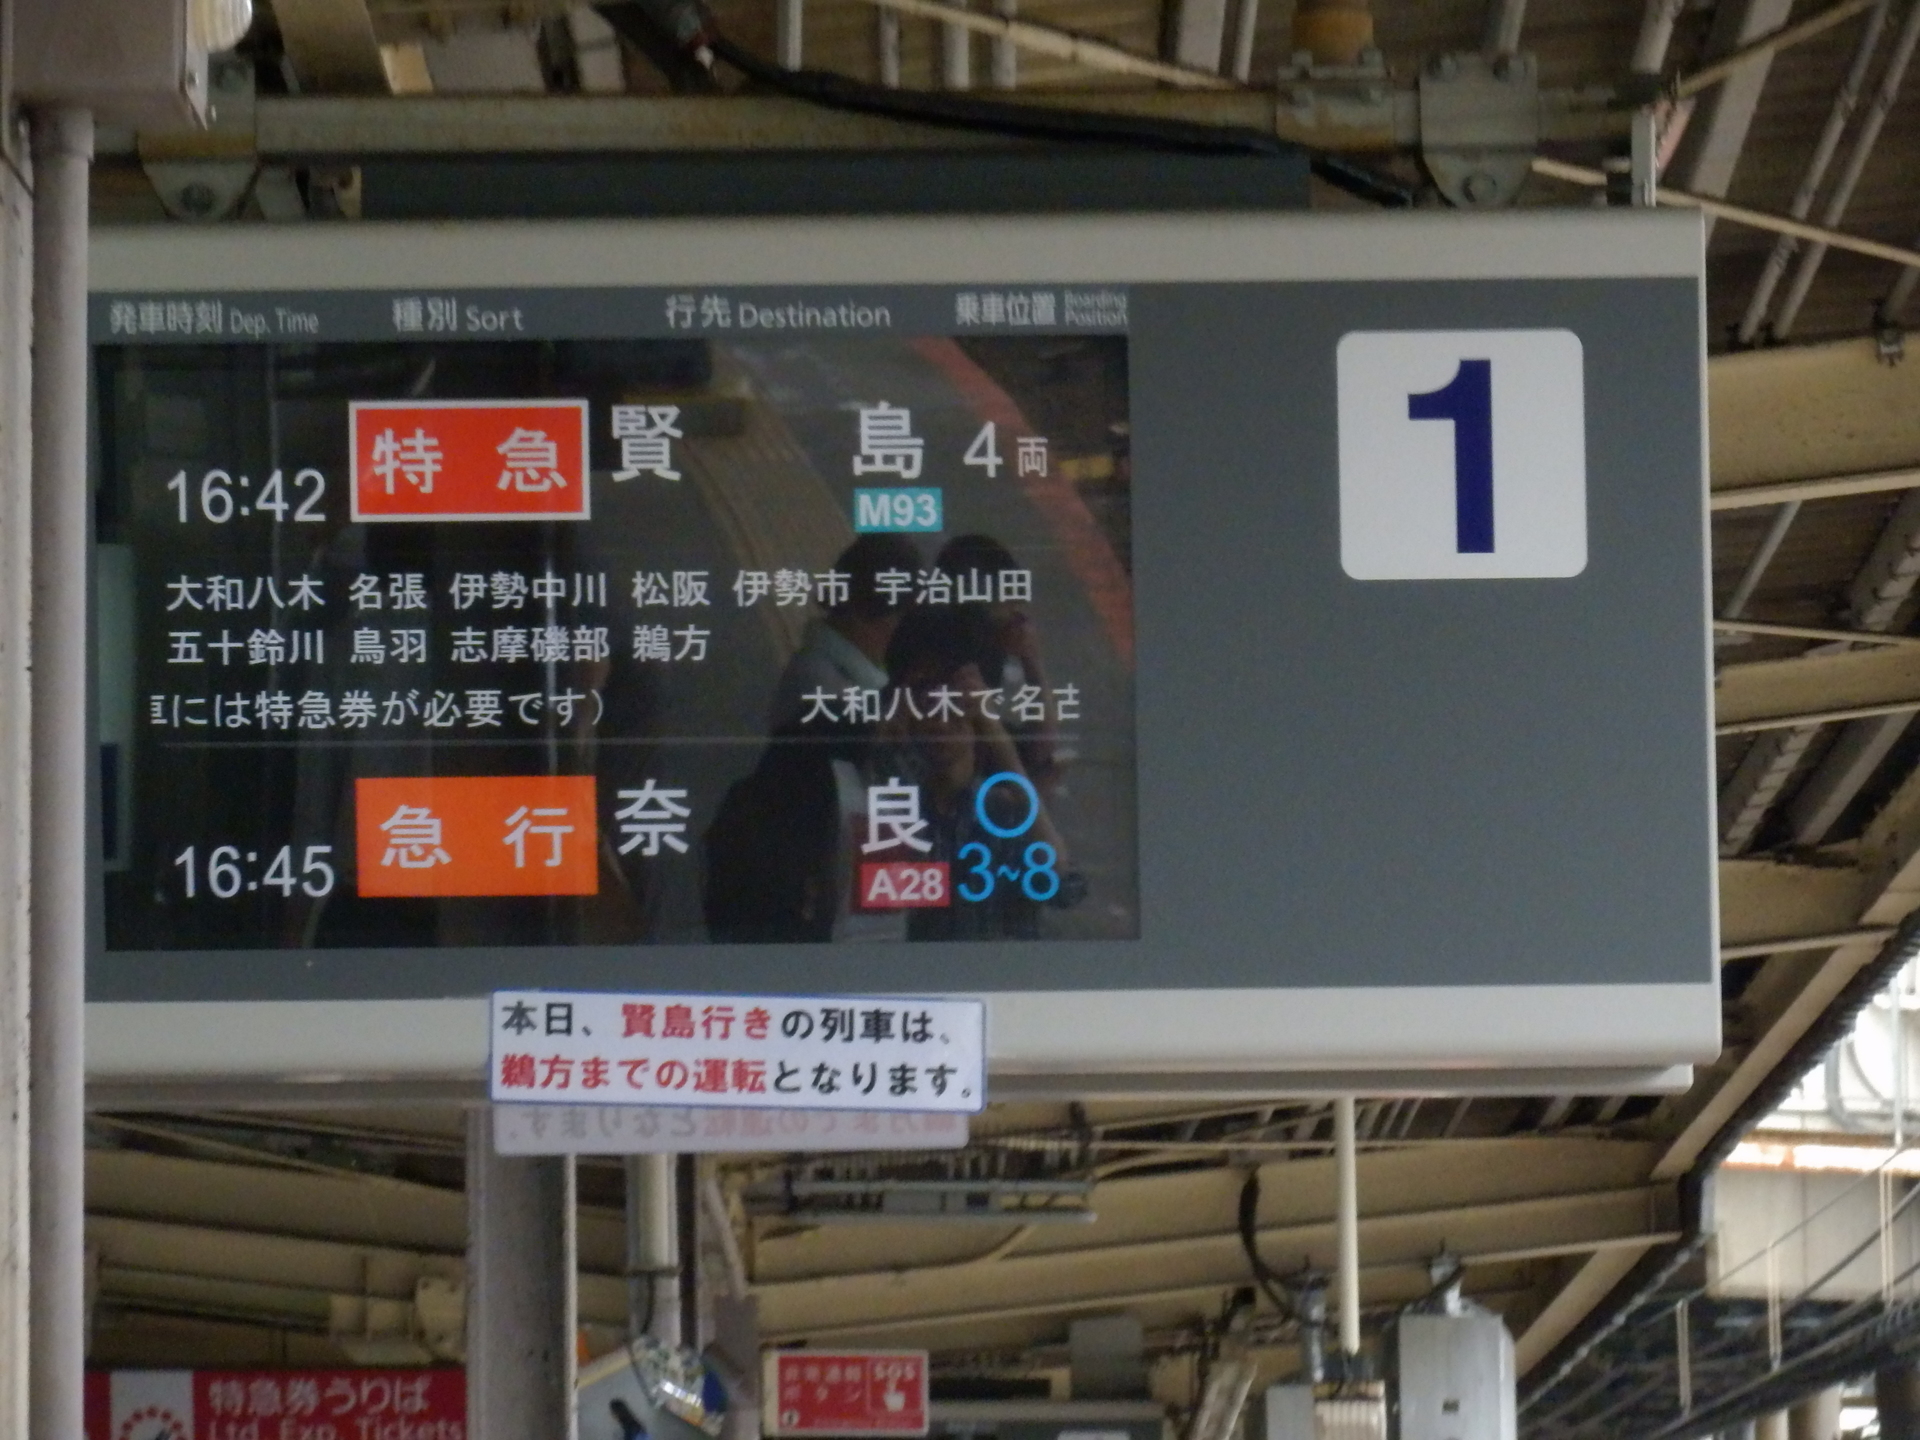 伊勢志摩サミットの近鉄への影響: Expedition-Railway by Gota.del 